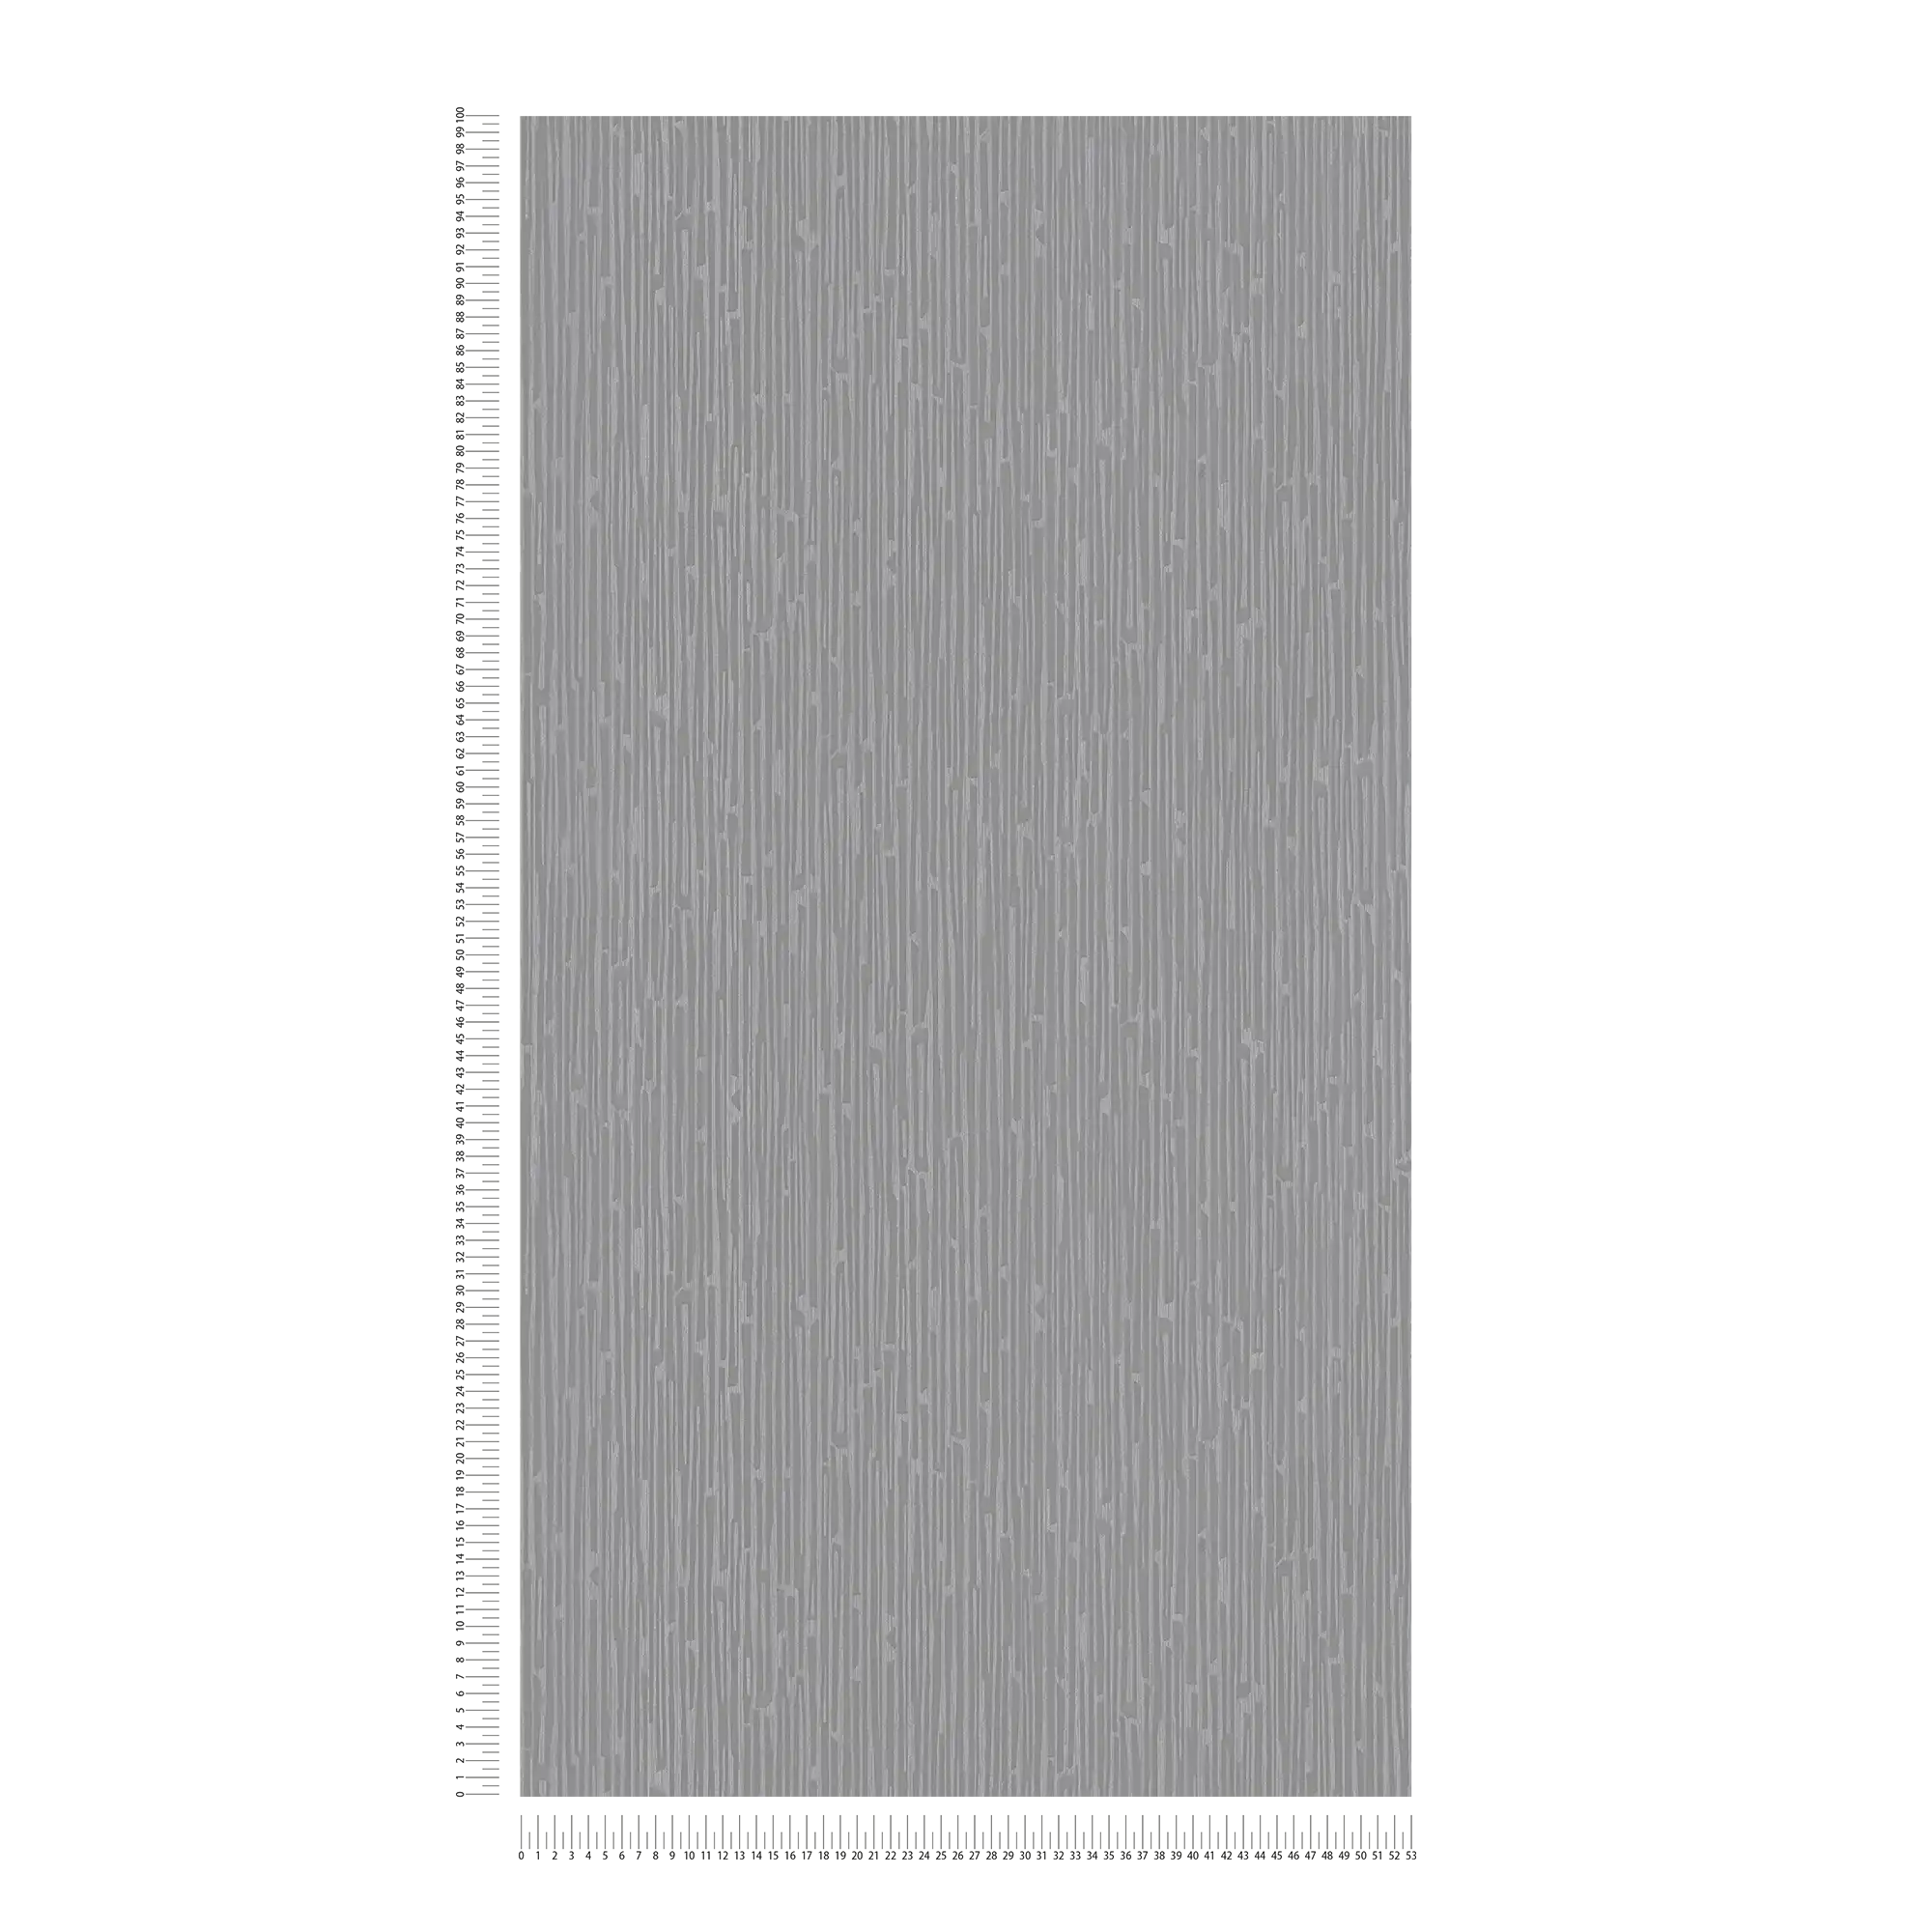             Melange wallpaper with metallic accents - grey
        